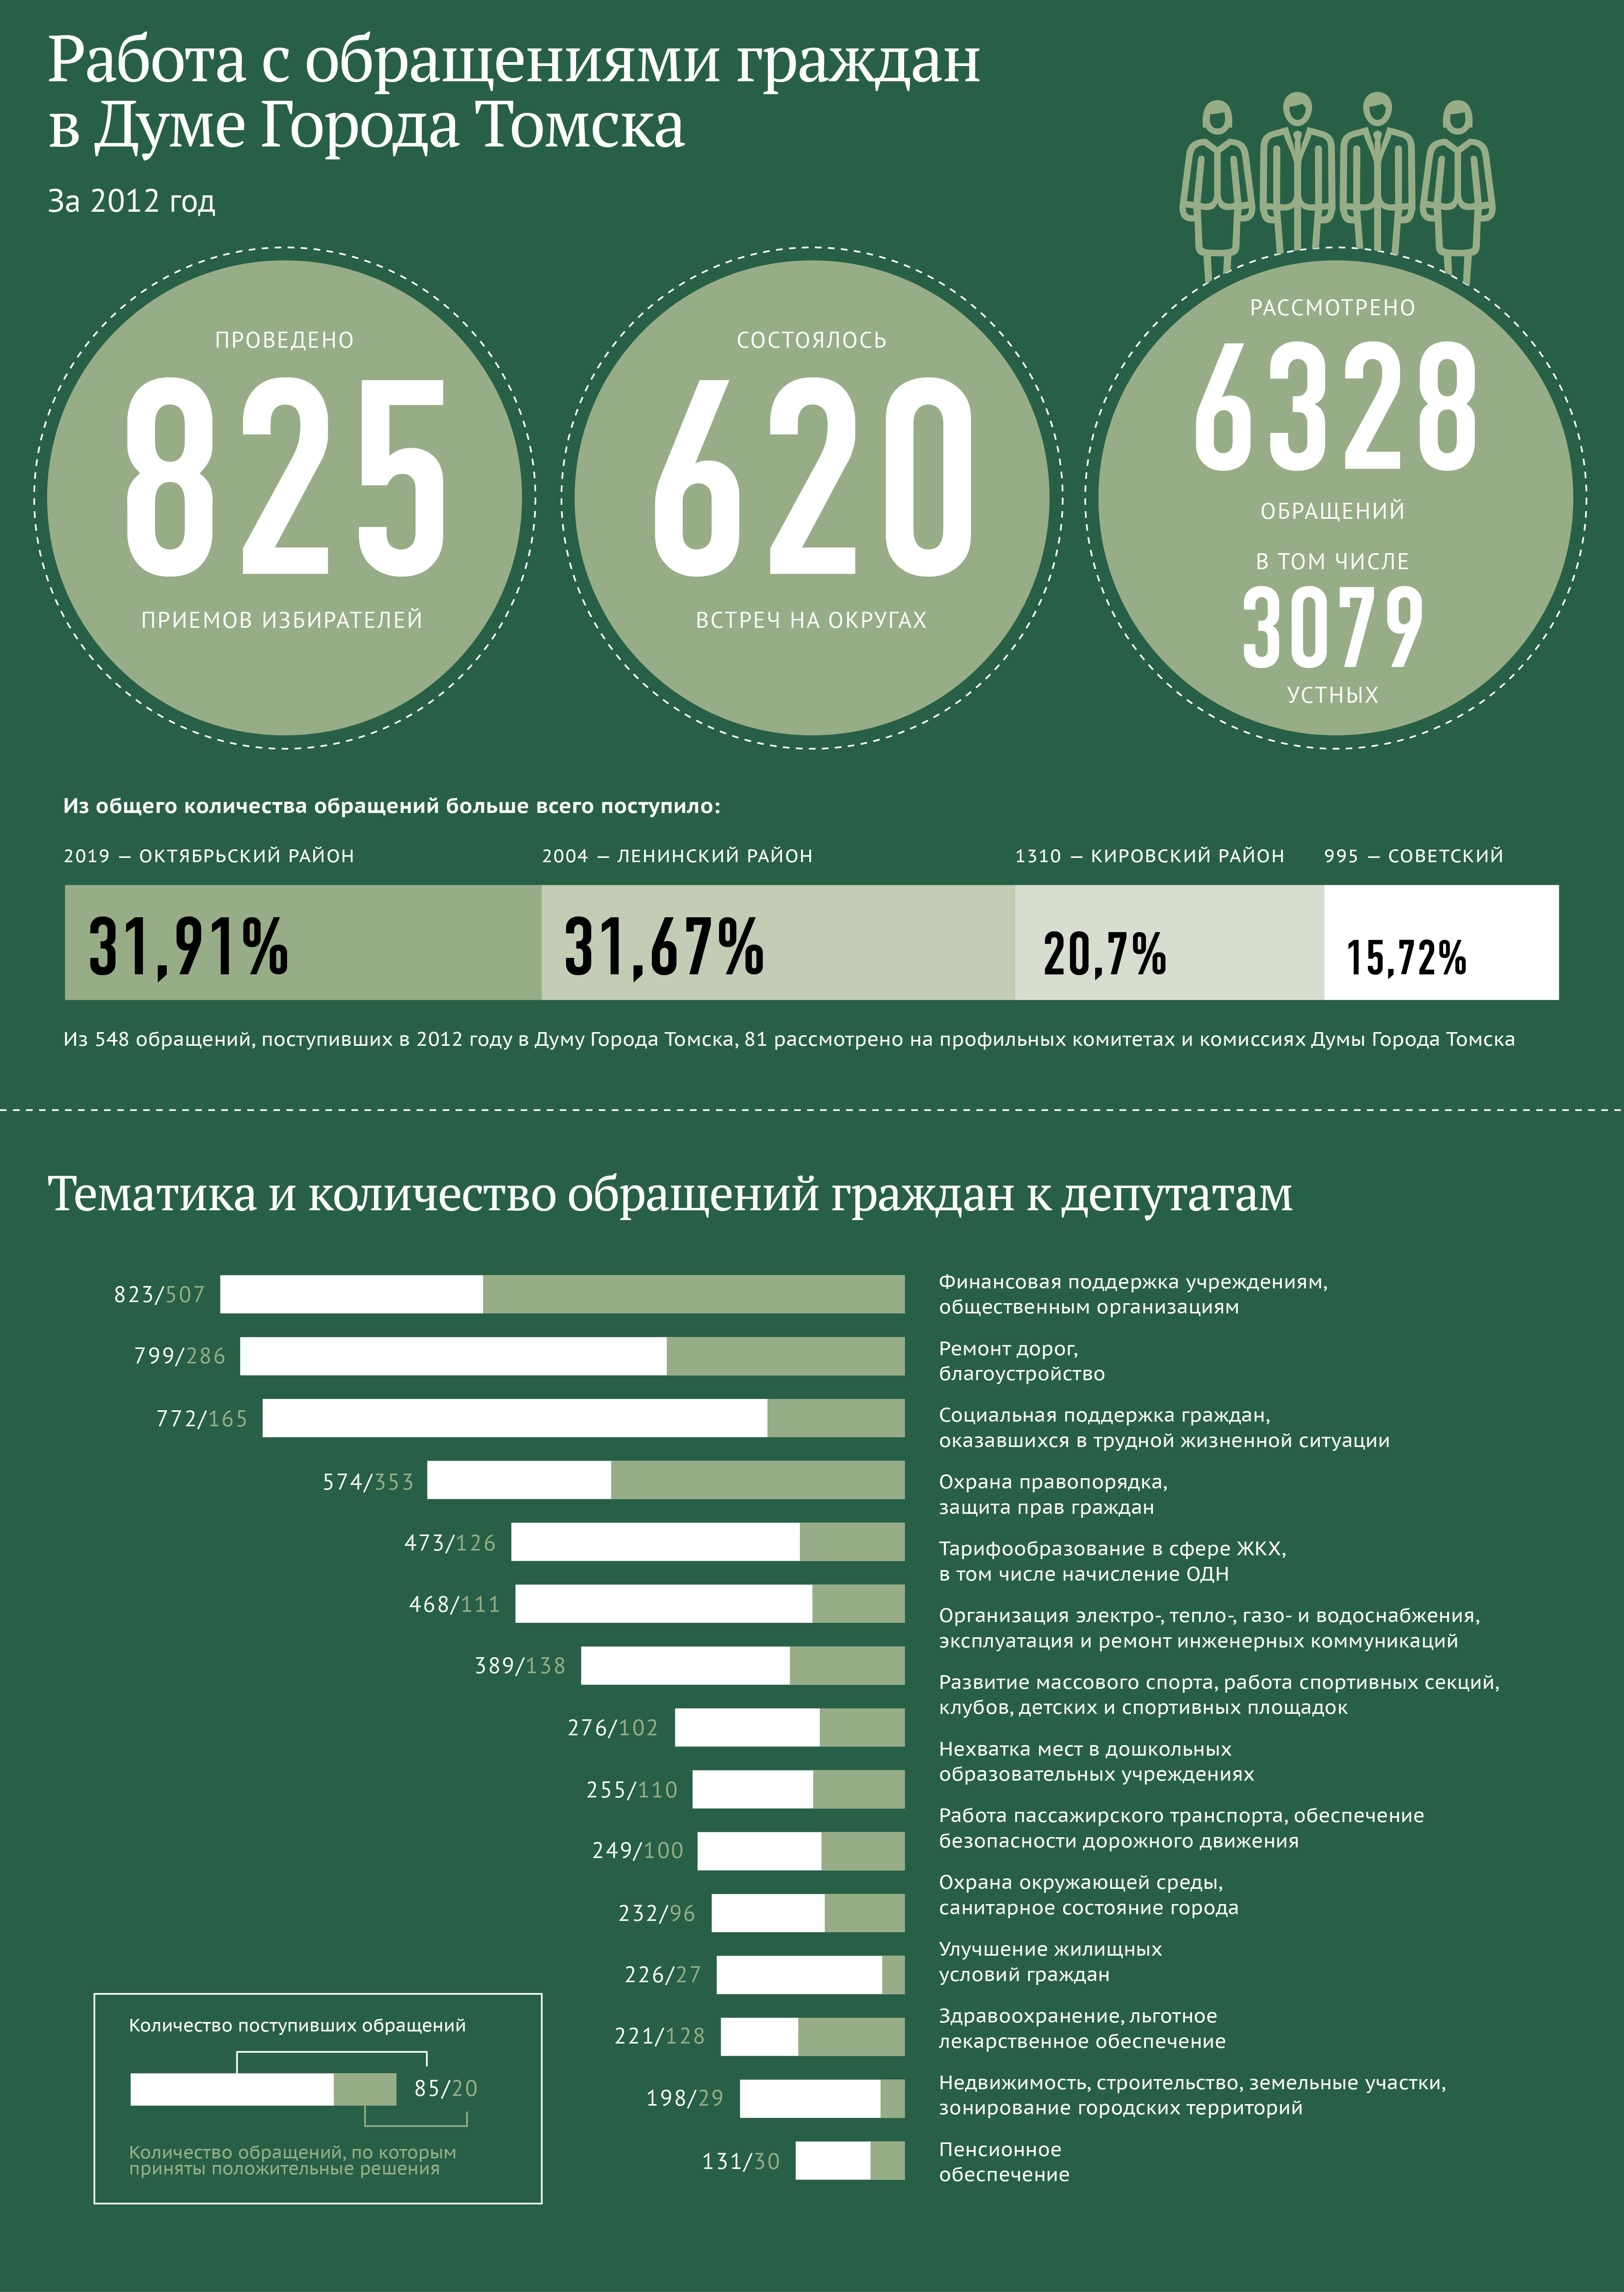 Работа с обращениями граждан в Думе города Томска в 2012 году